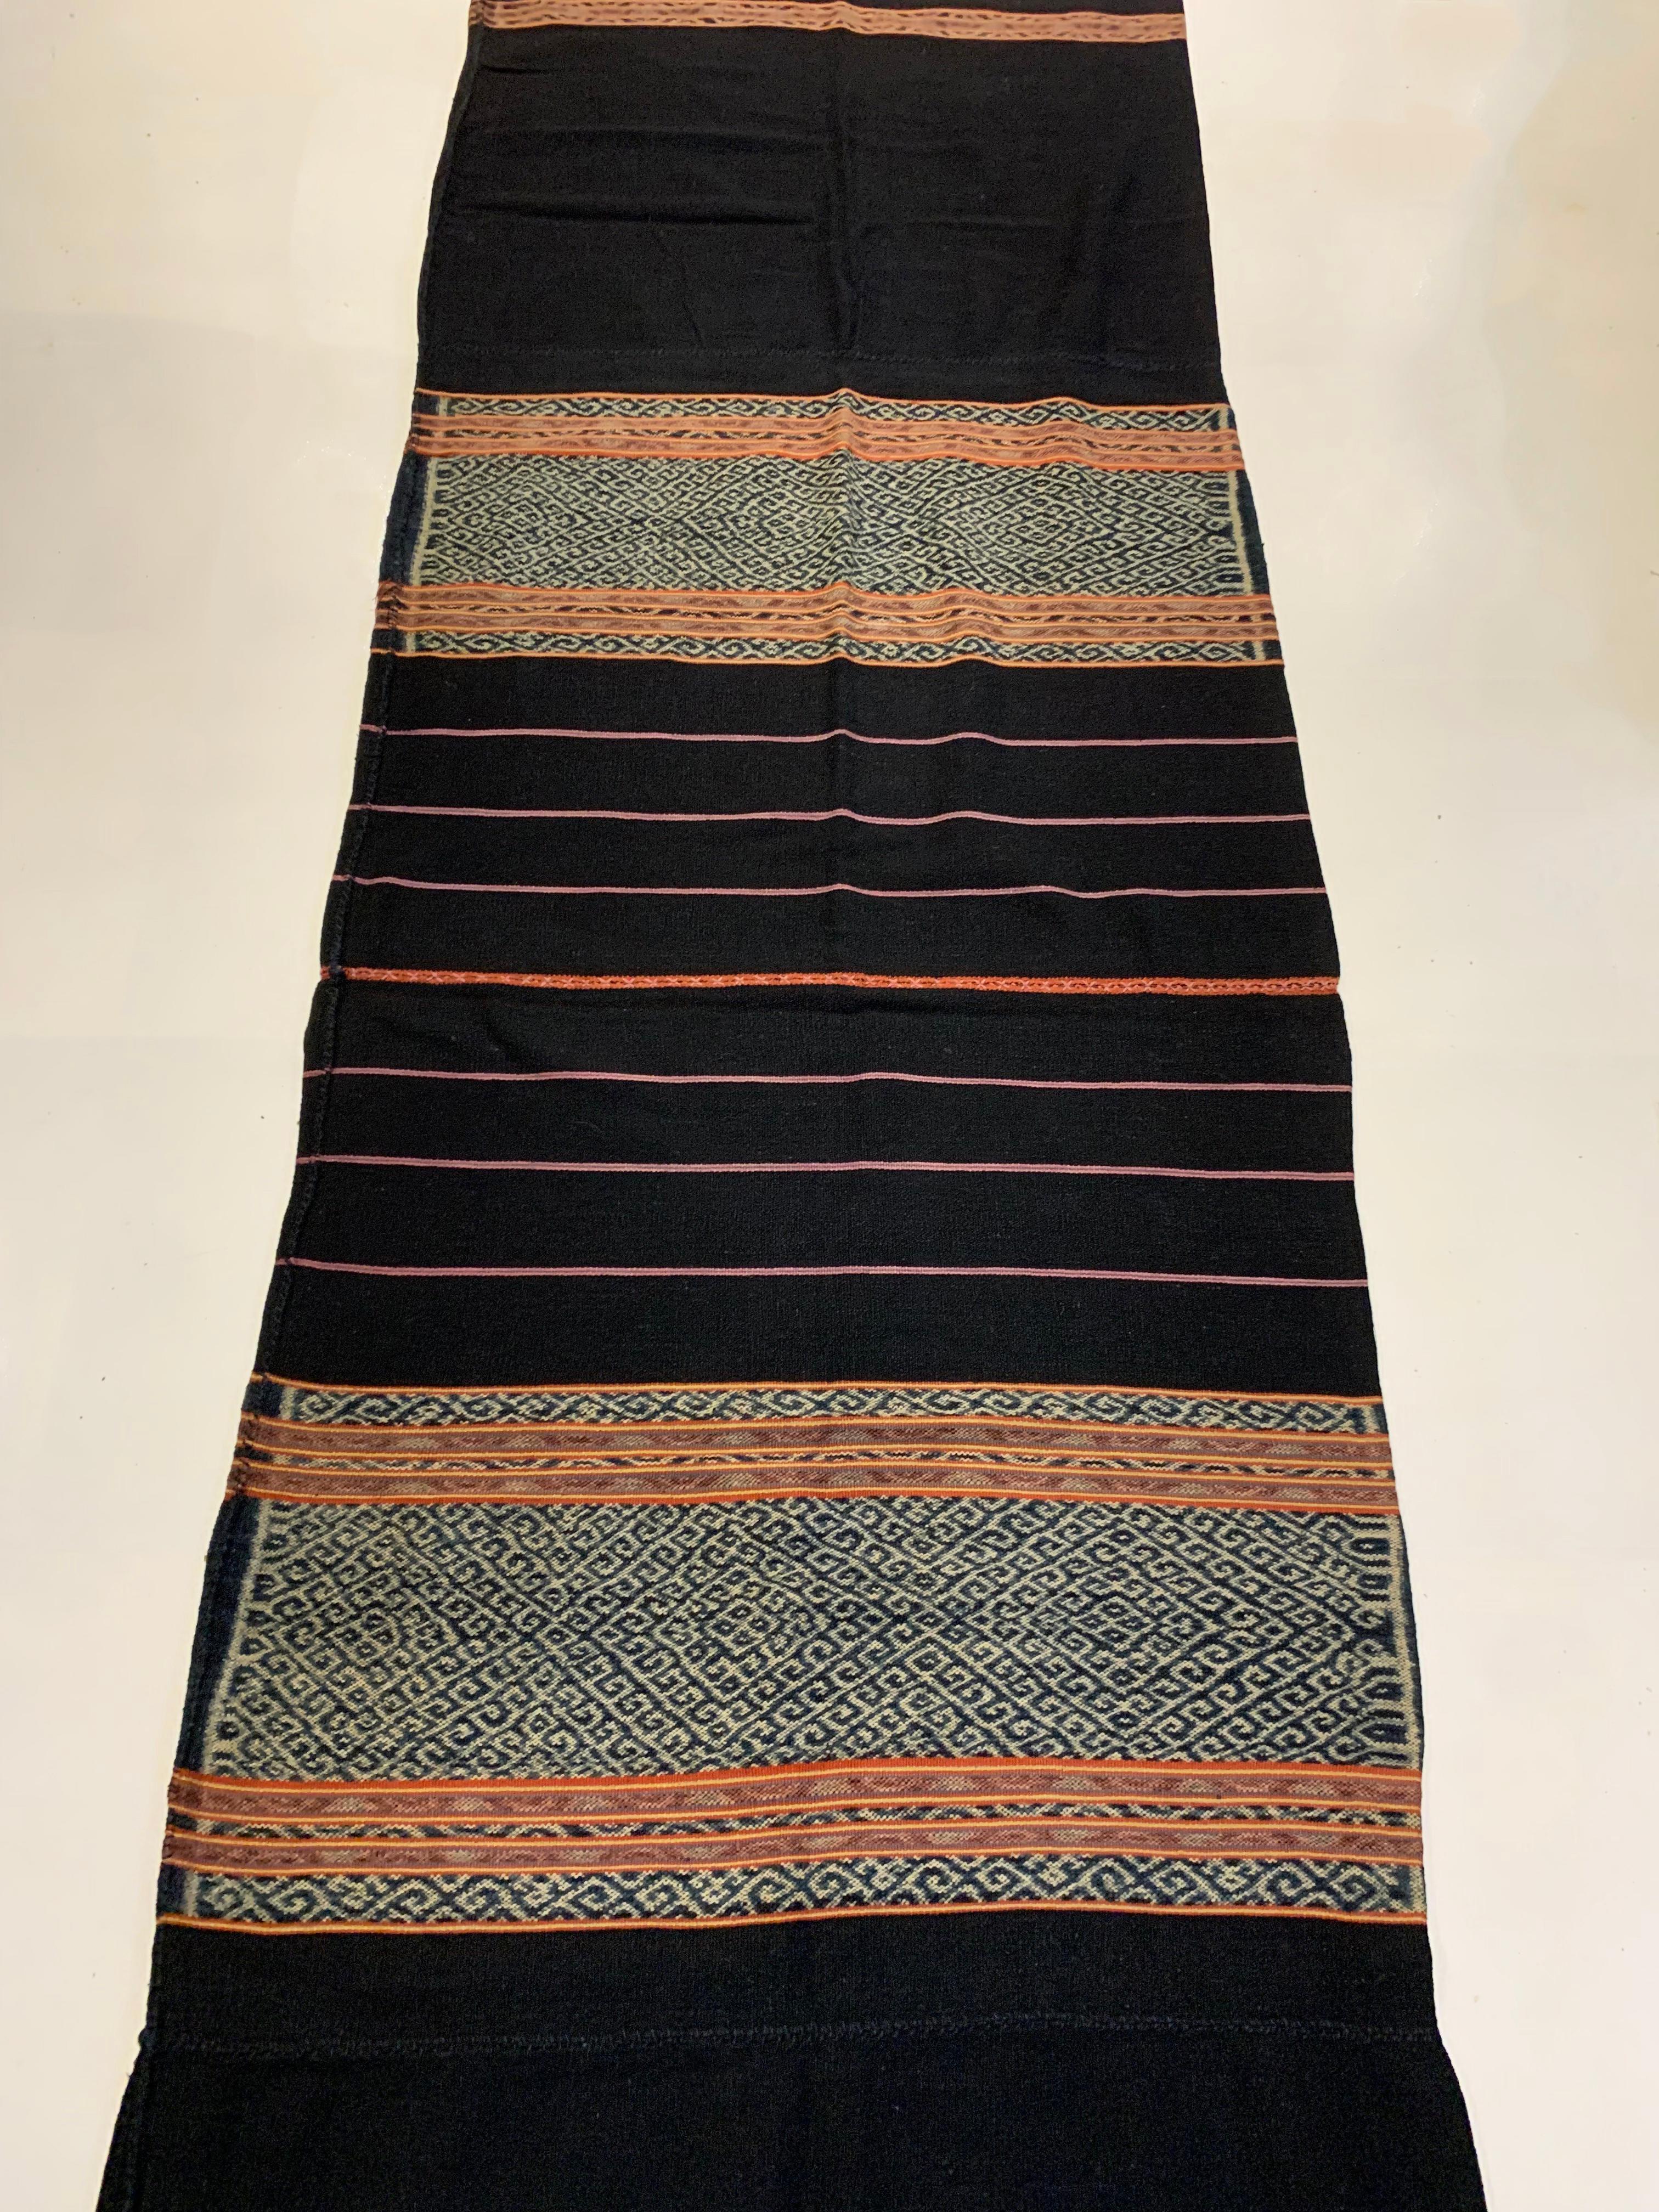 Dieses Ikat-Textil stammt von der Insel Timor in Indonesien. Es wird mit natürlich gefärbten Garnen nach einer seit Generationen überlieferten Methode handgewebt. Auf dem dunklen Hintergrund kommen die vielen farbigen Details und die ausgeprägten